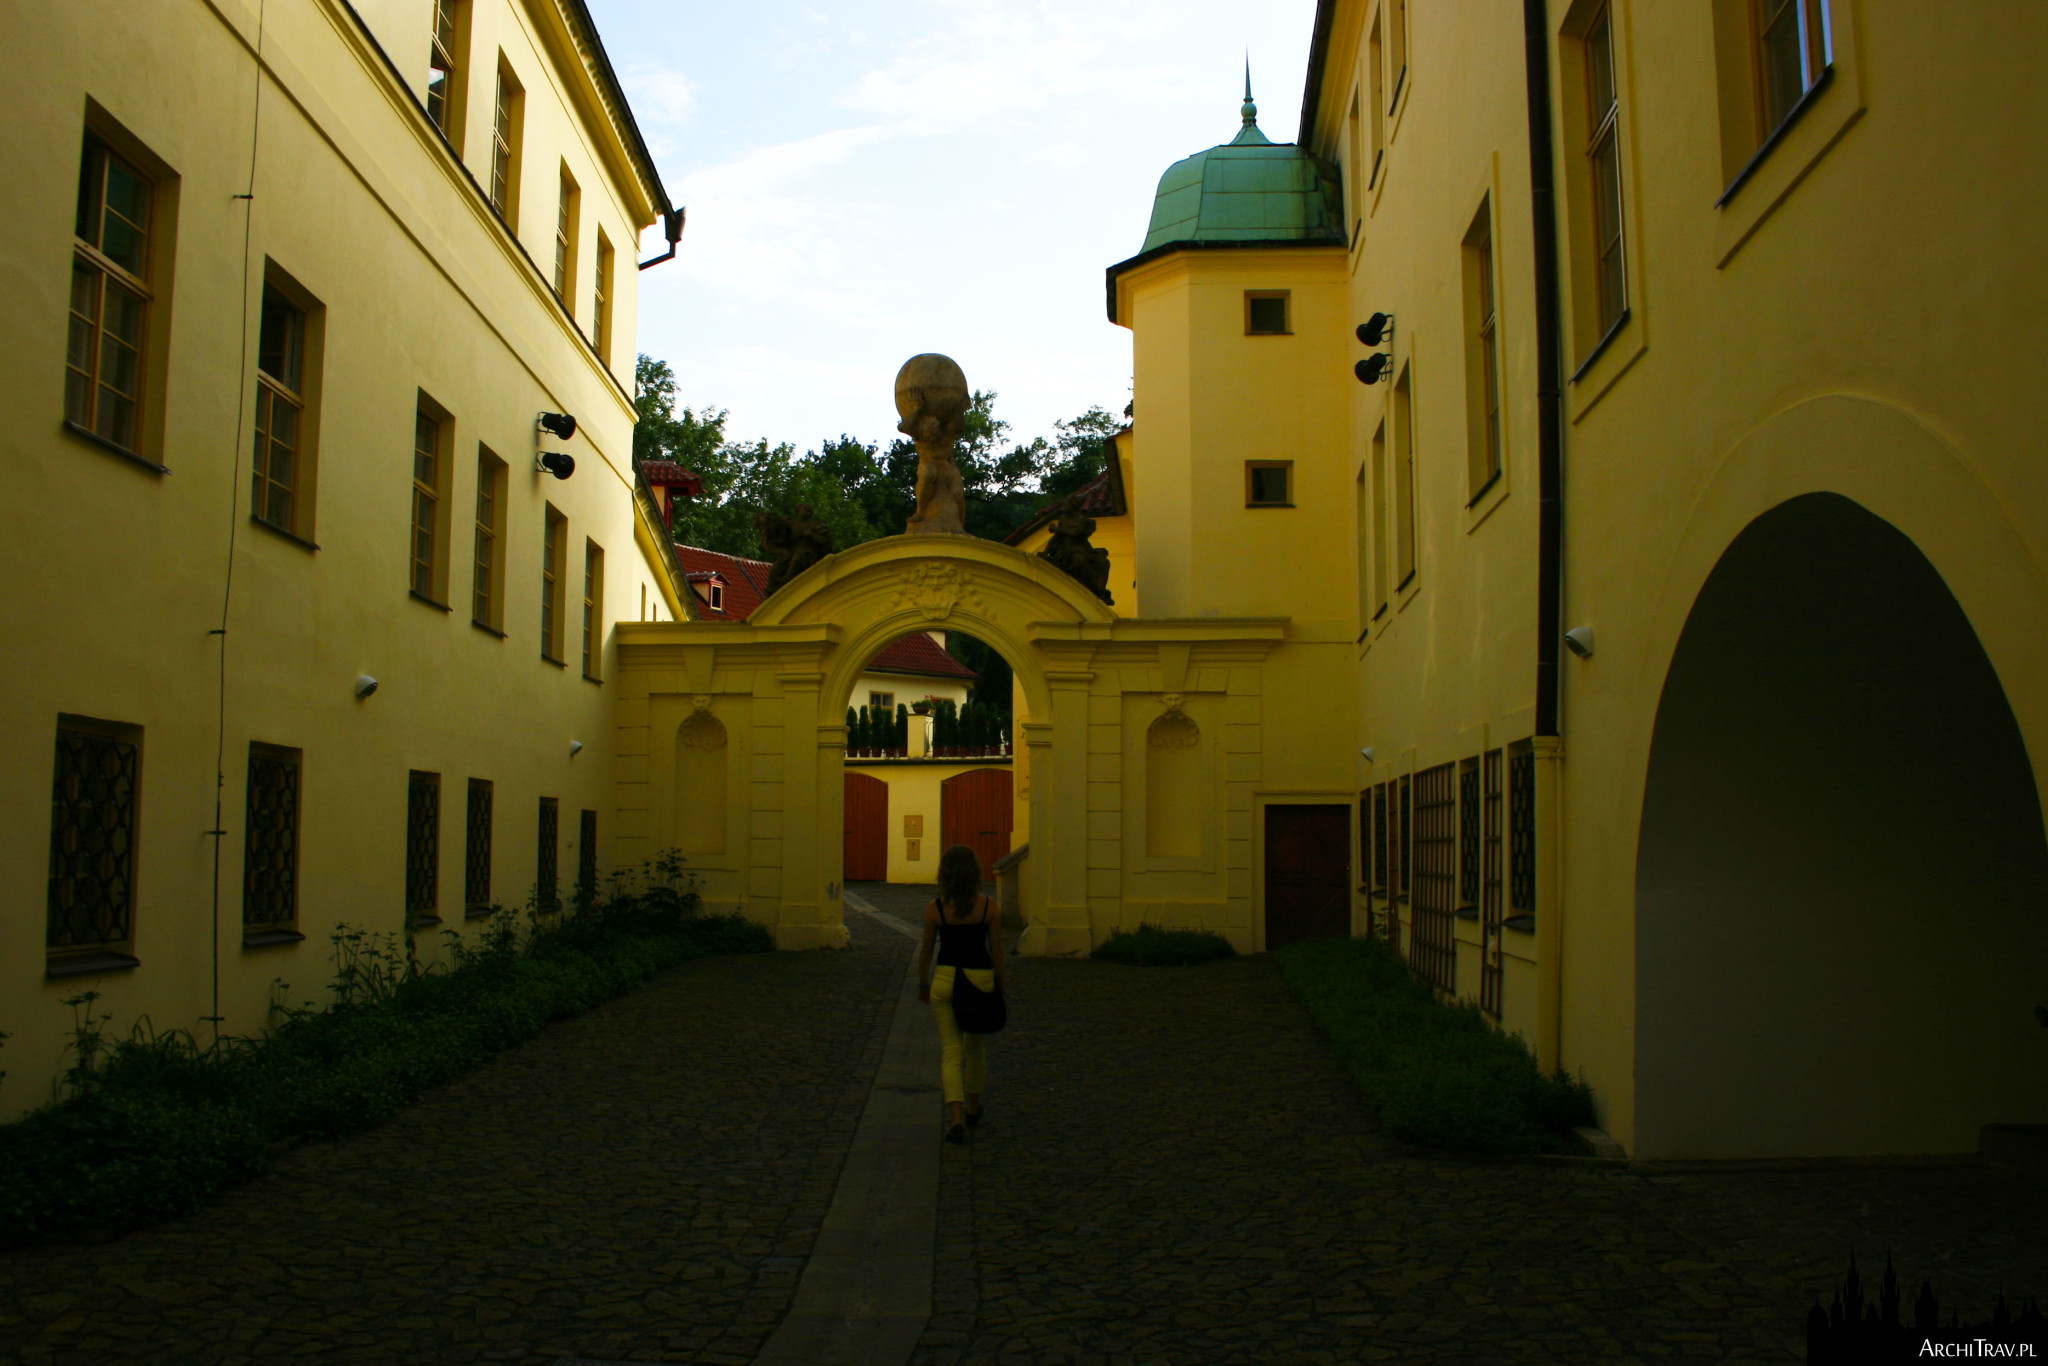 wejście do Ogrodu Vrtbowskiego, Praga